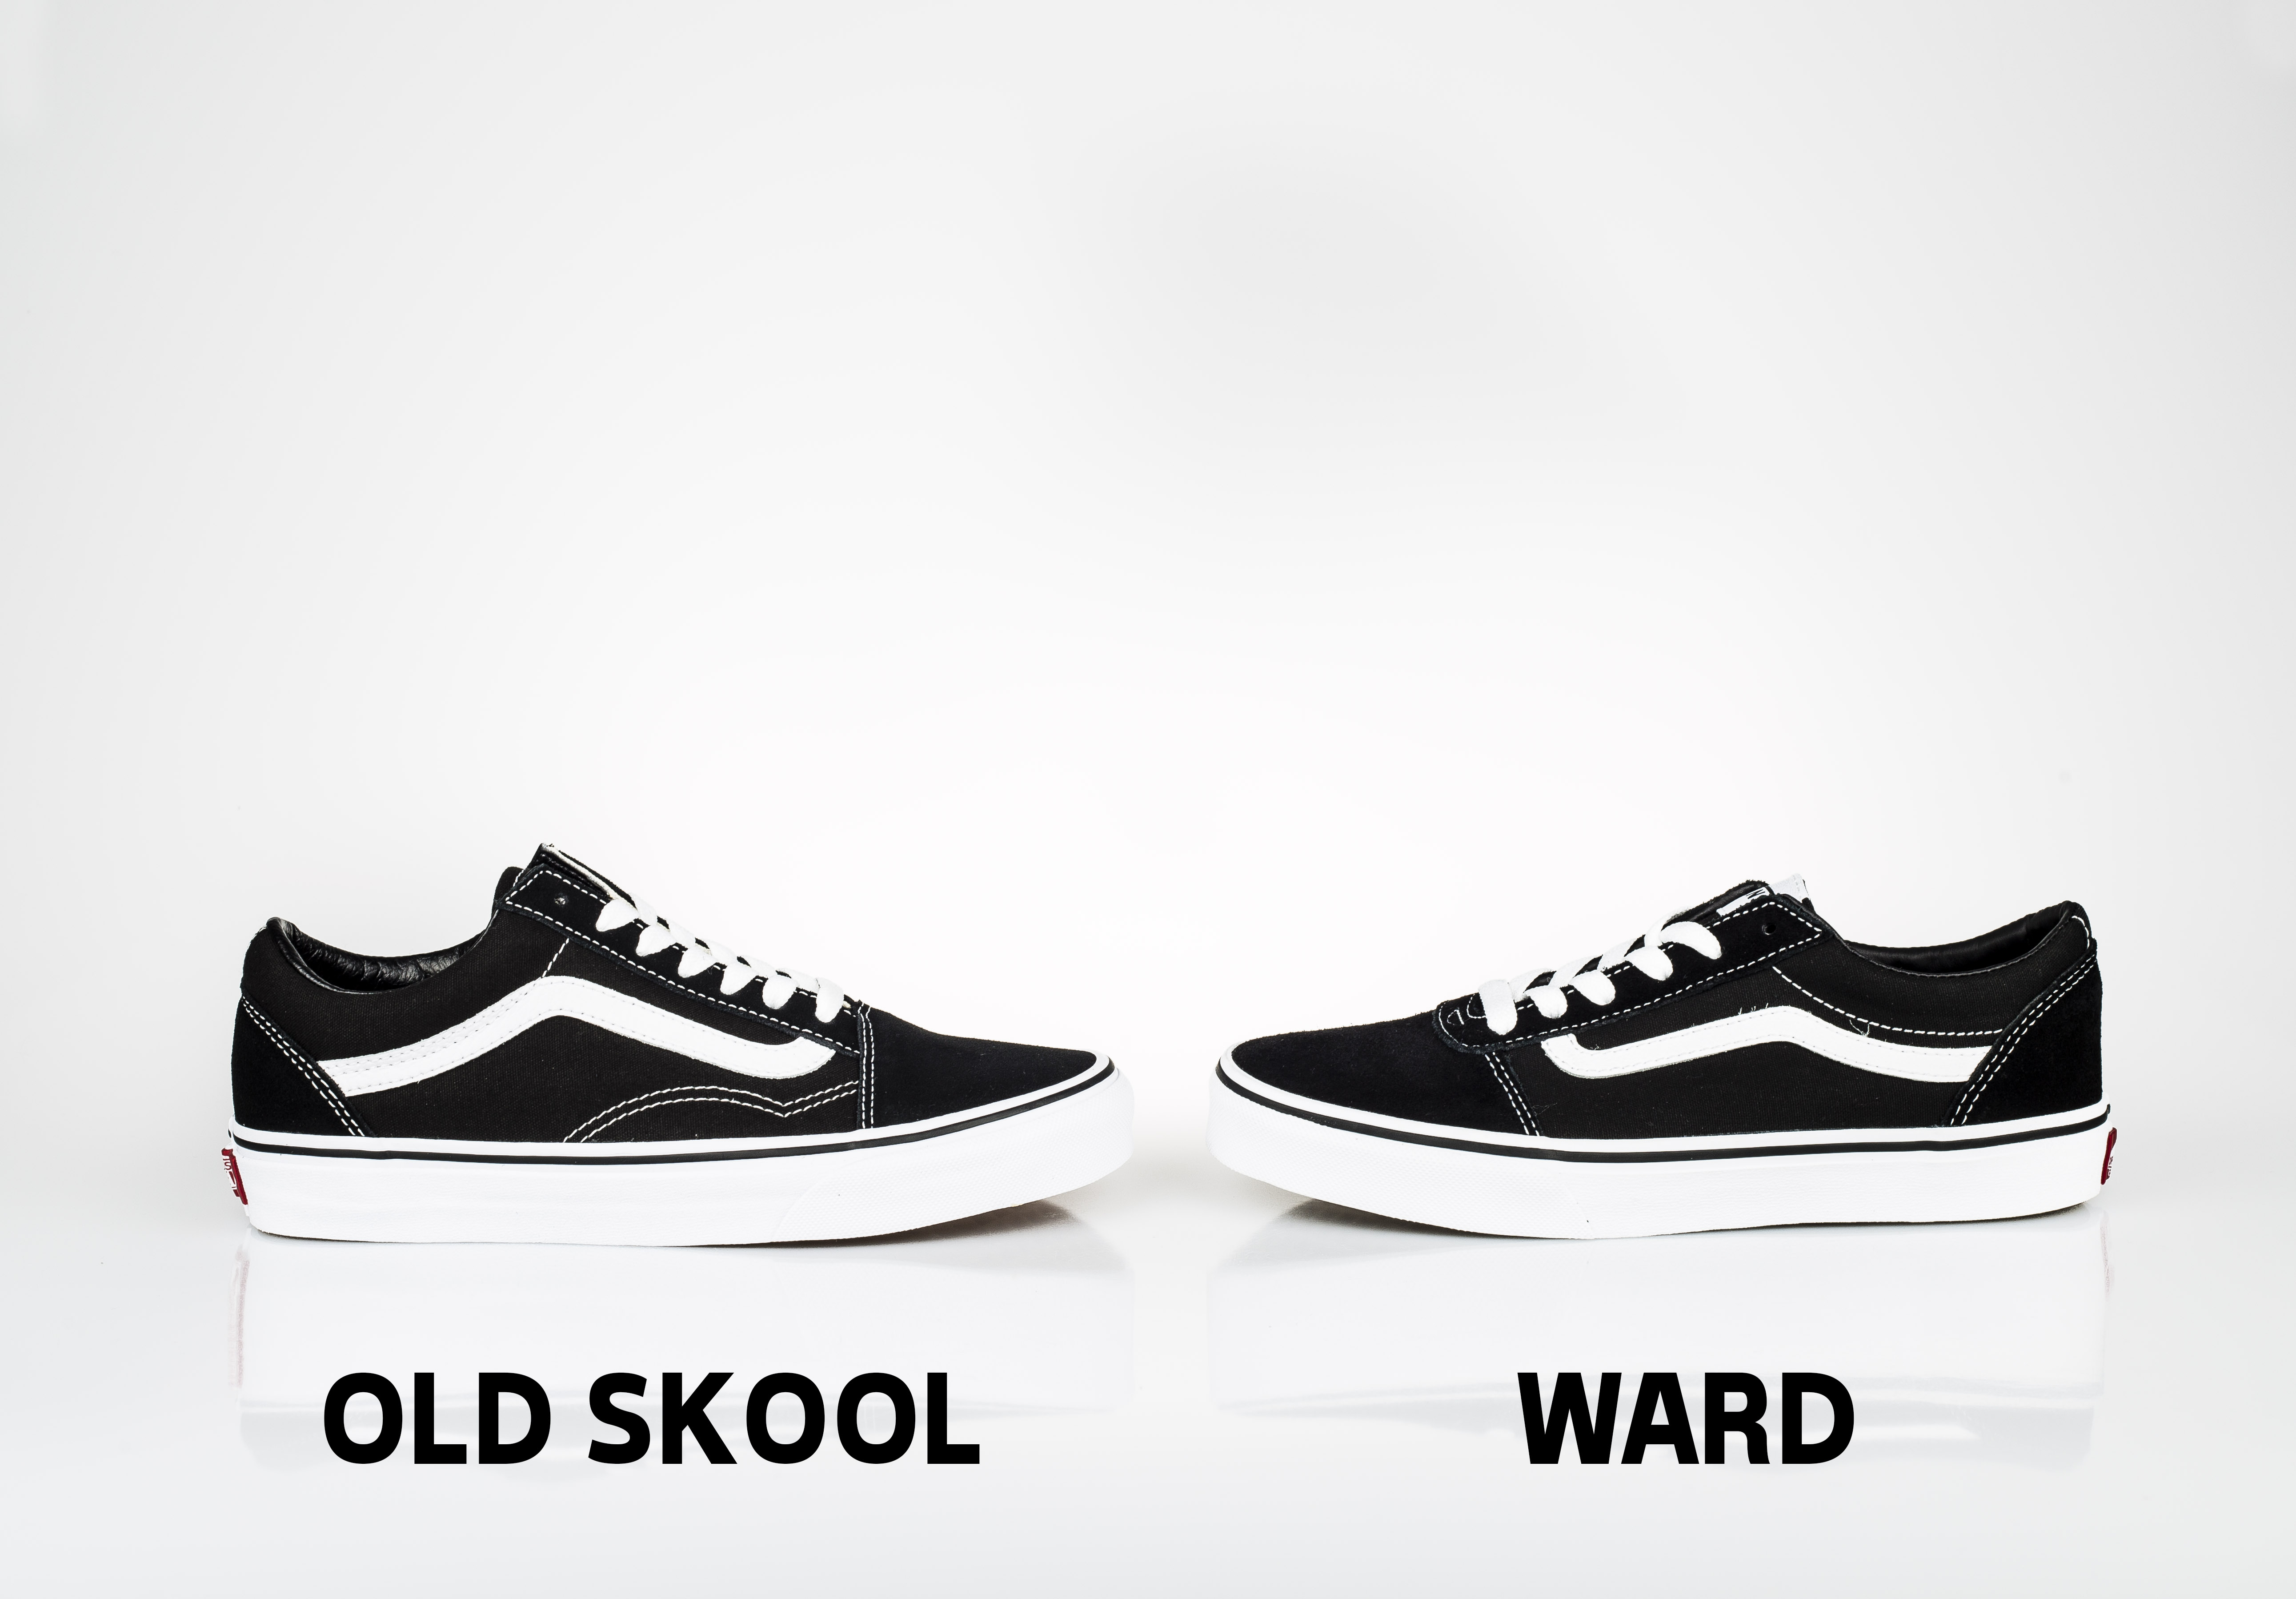 vans ward vs vans old skool